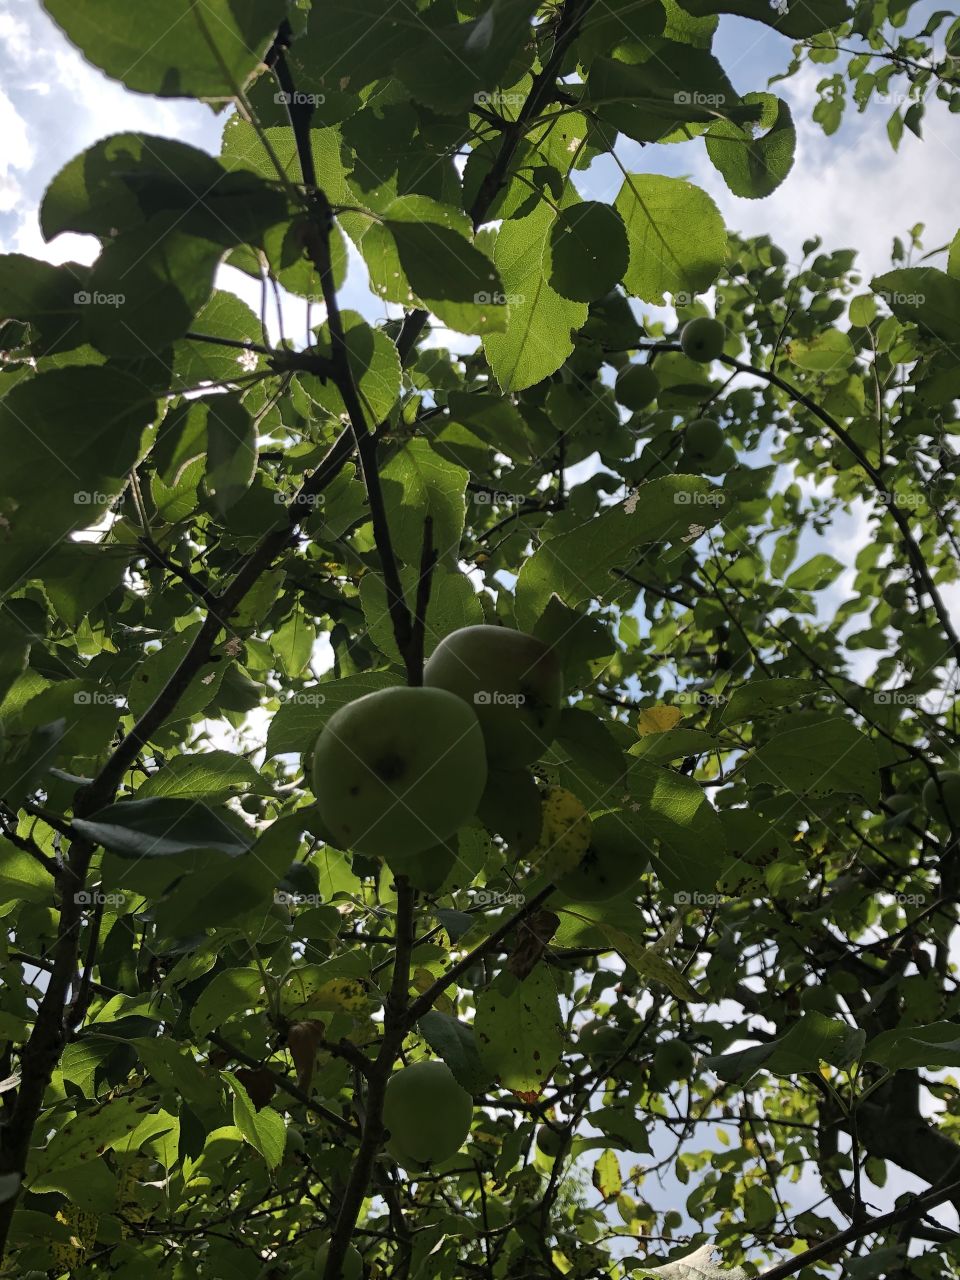 Tree bearing fruit